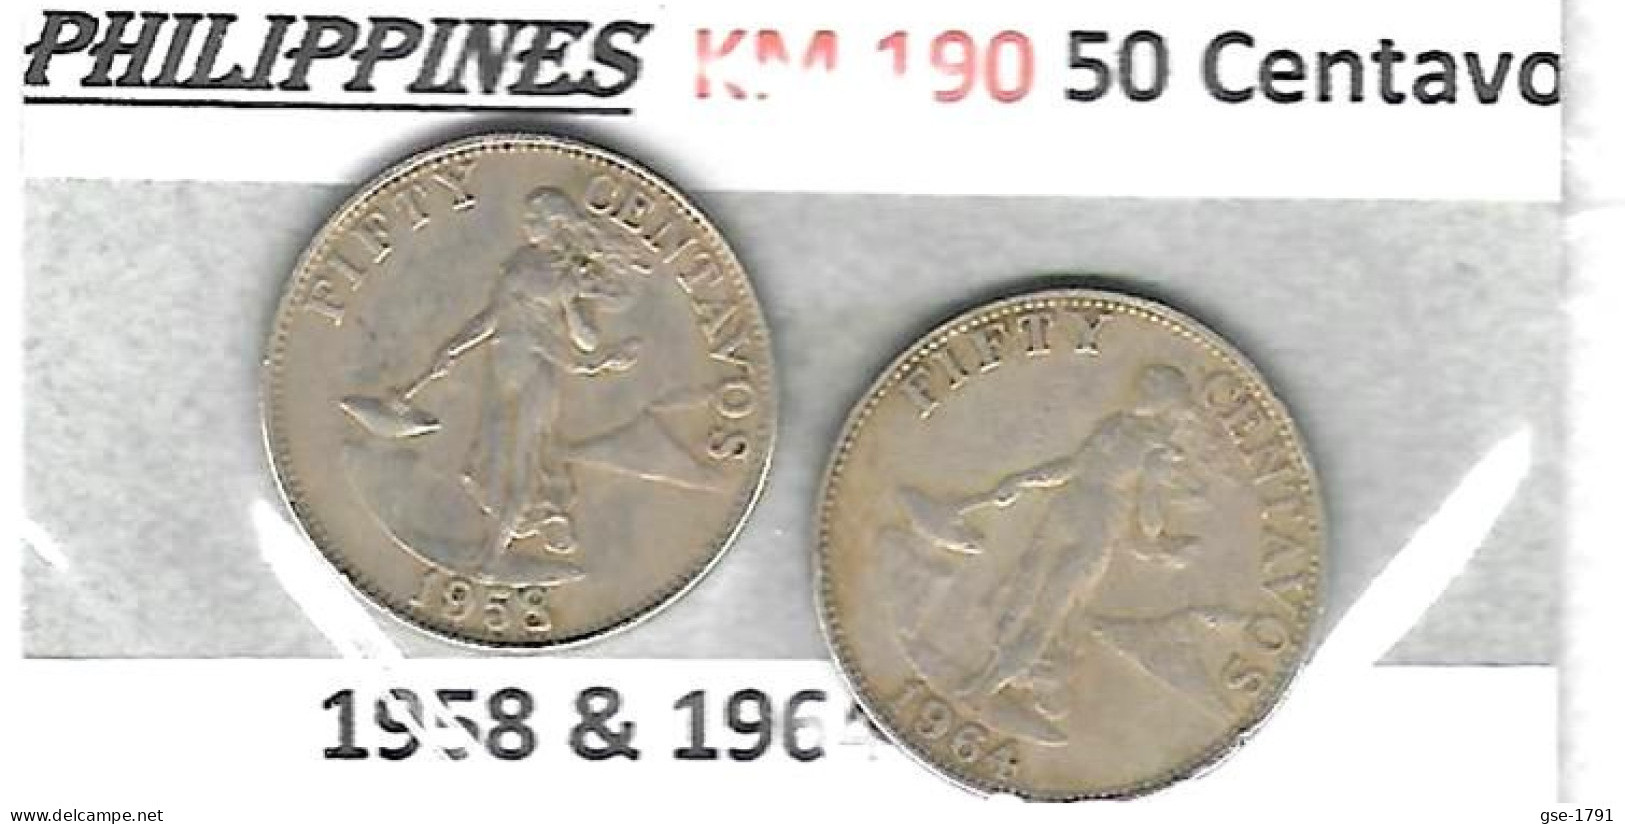 PHILIPPINES Républic Décimal, Petites Monnaies, Femme, 50 Centavos  KM  190 - Filippine